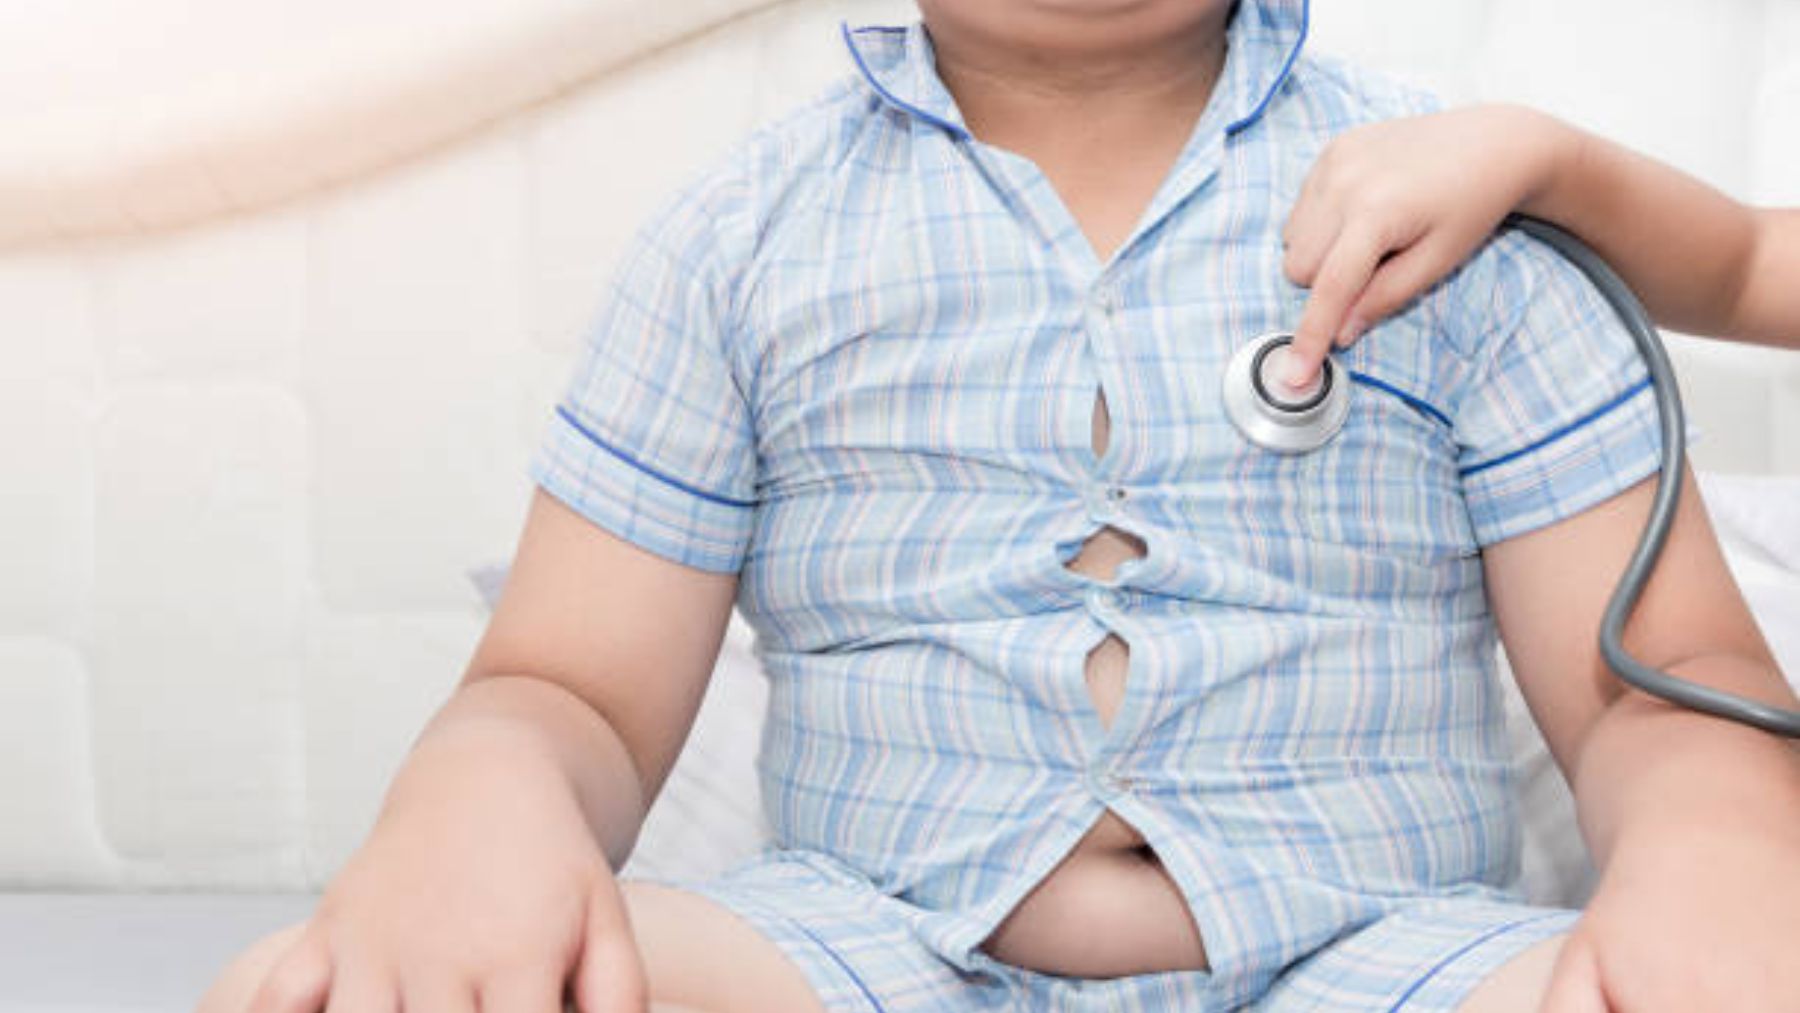 Pautas para evitar el sobrepeso infantil